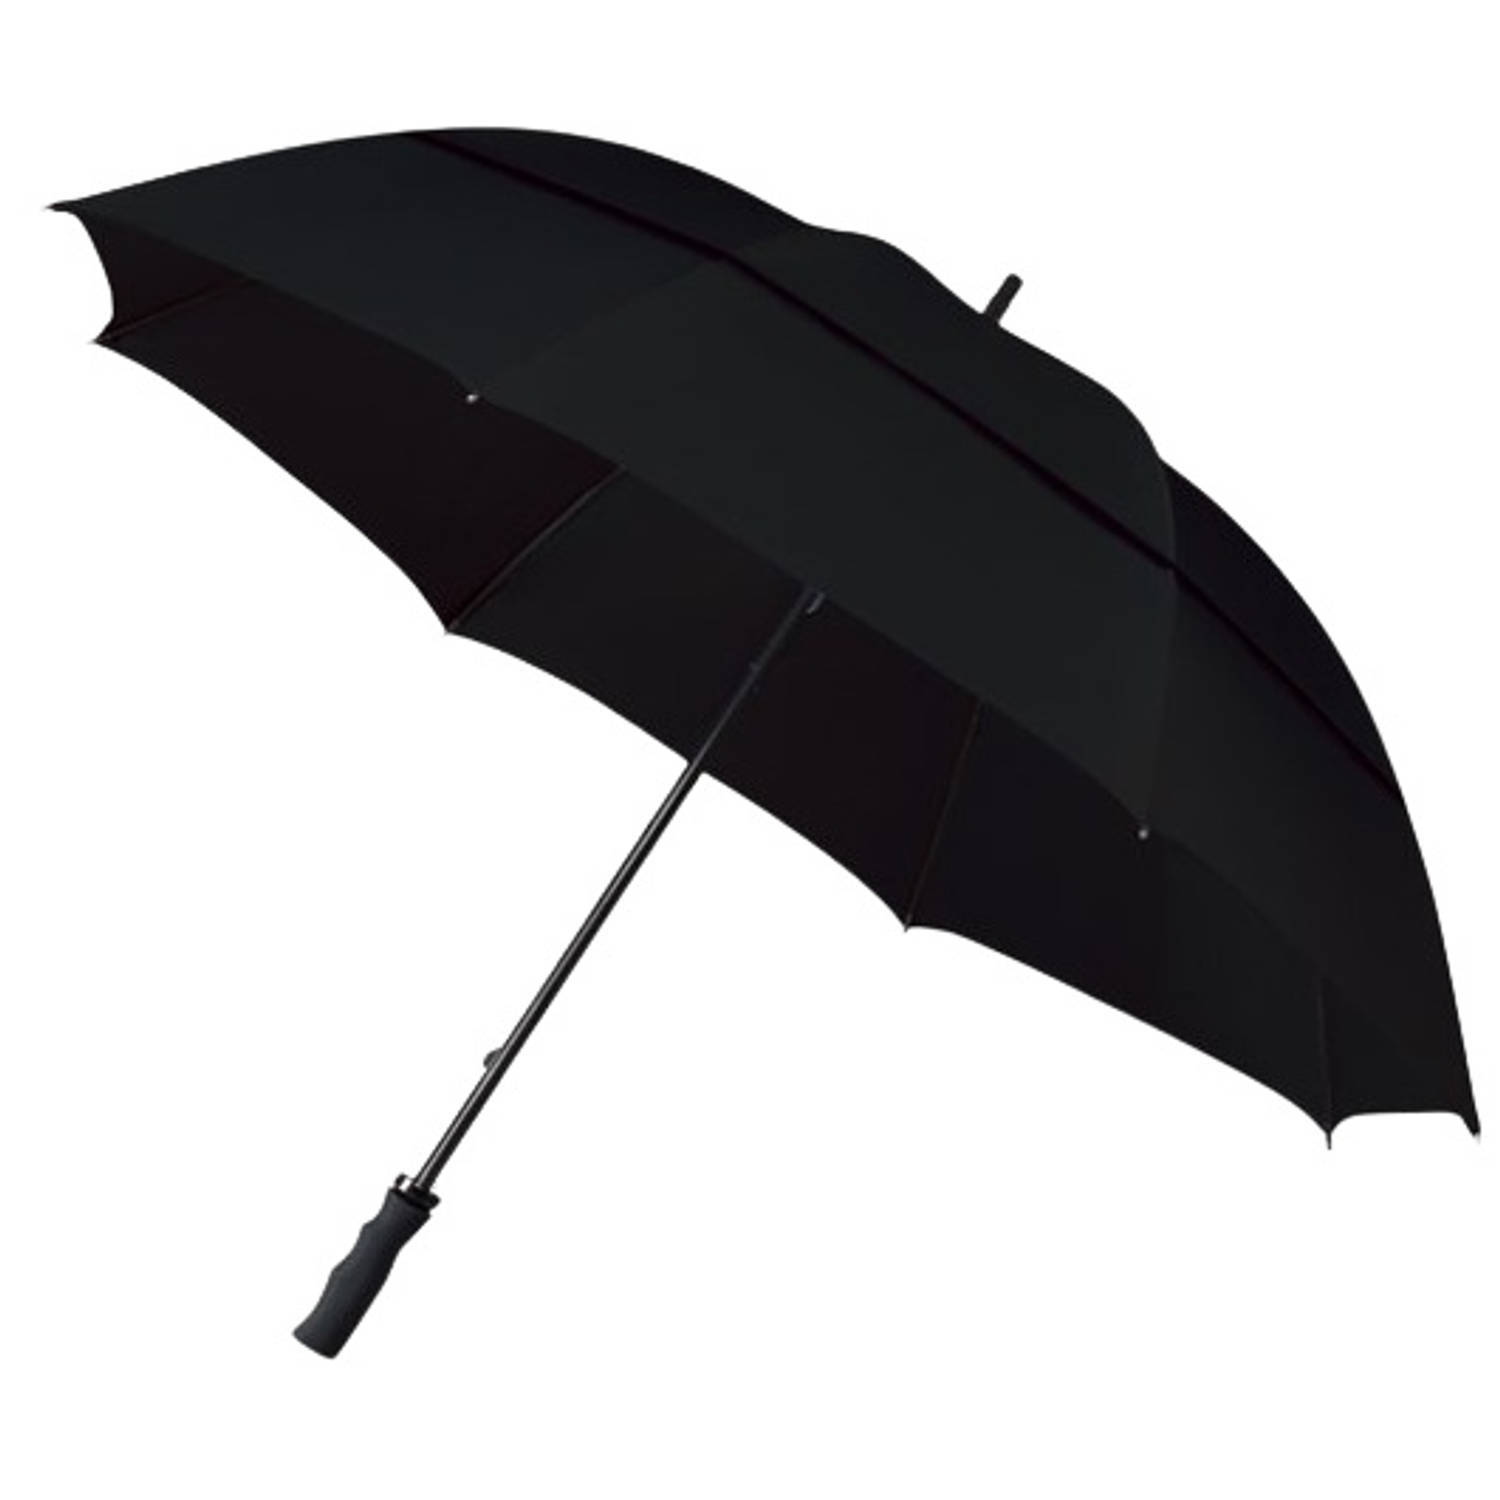 production-umbrella-black